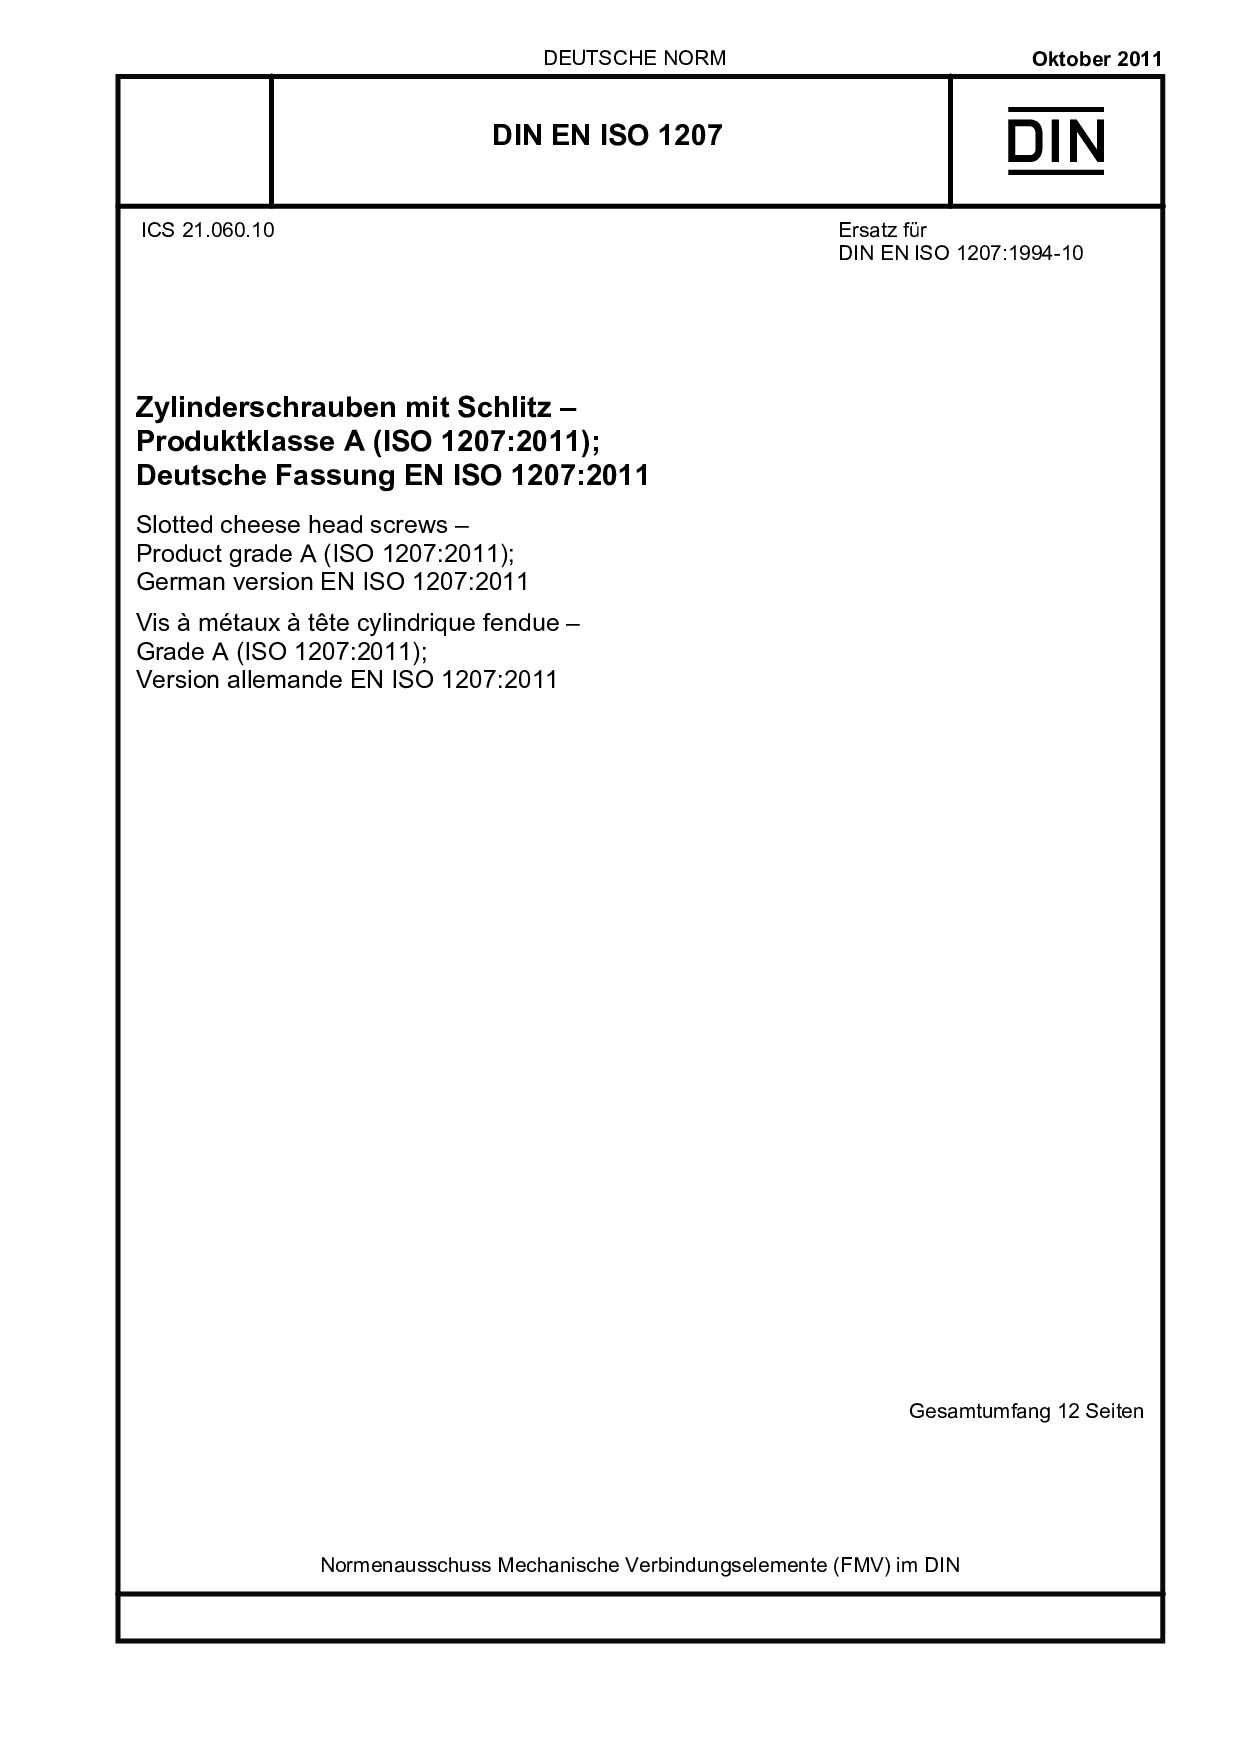 DIN EN ISO 1207:2011封面图